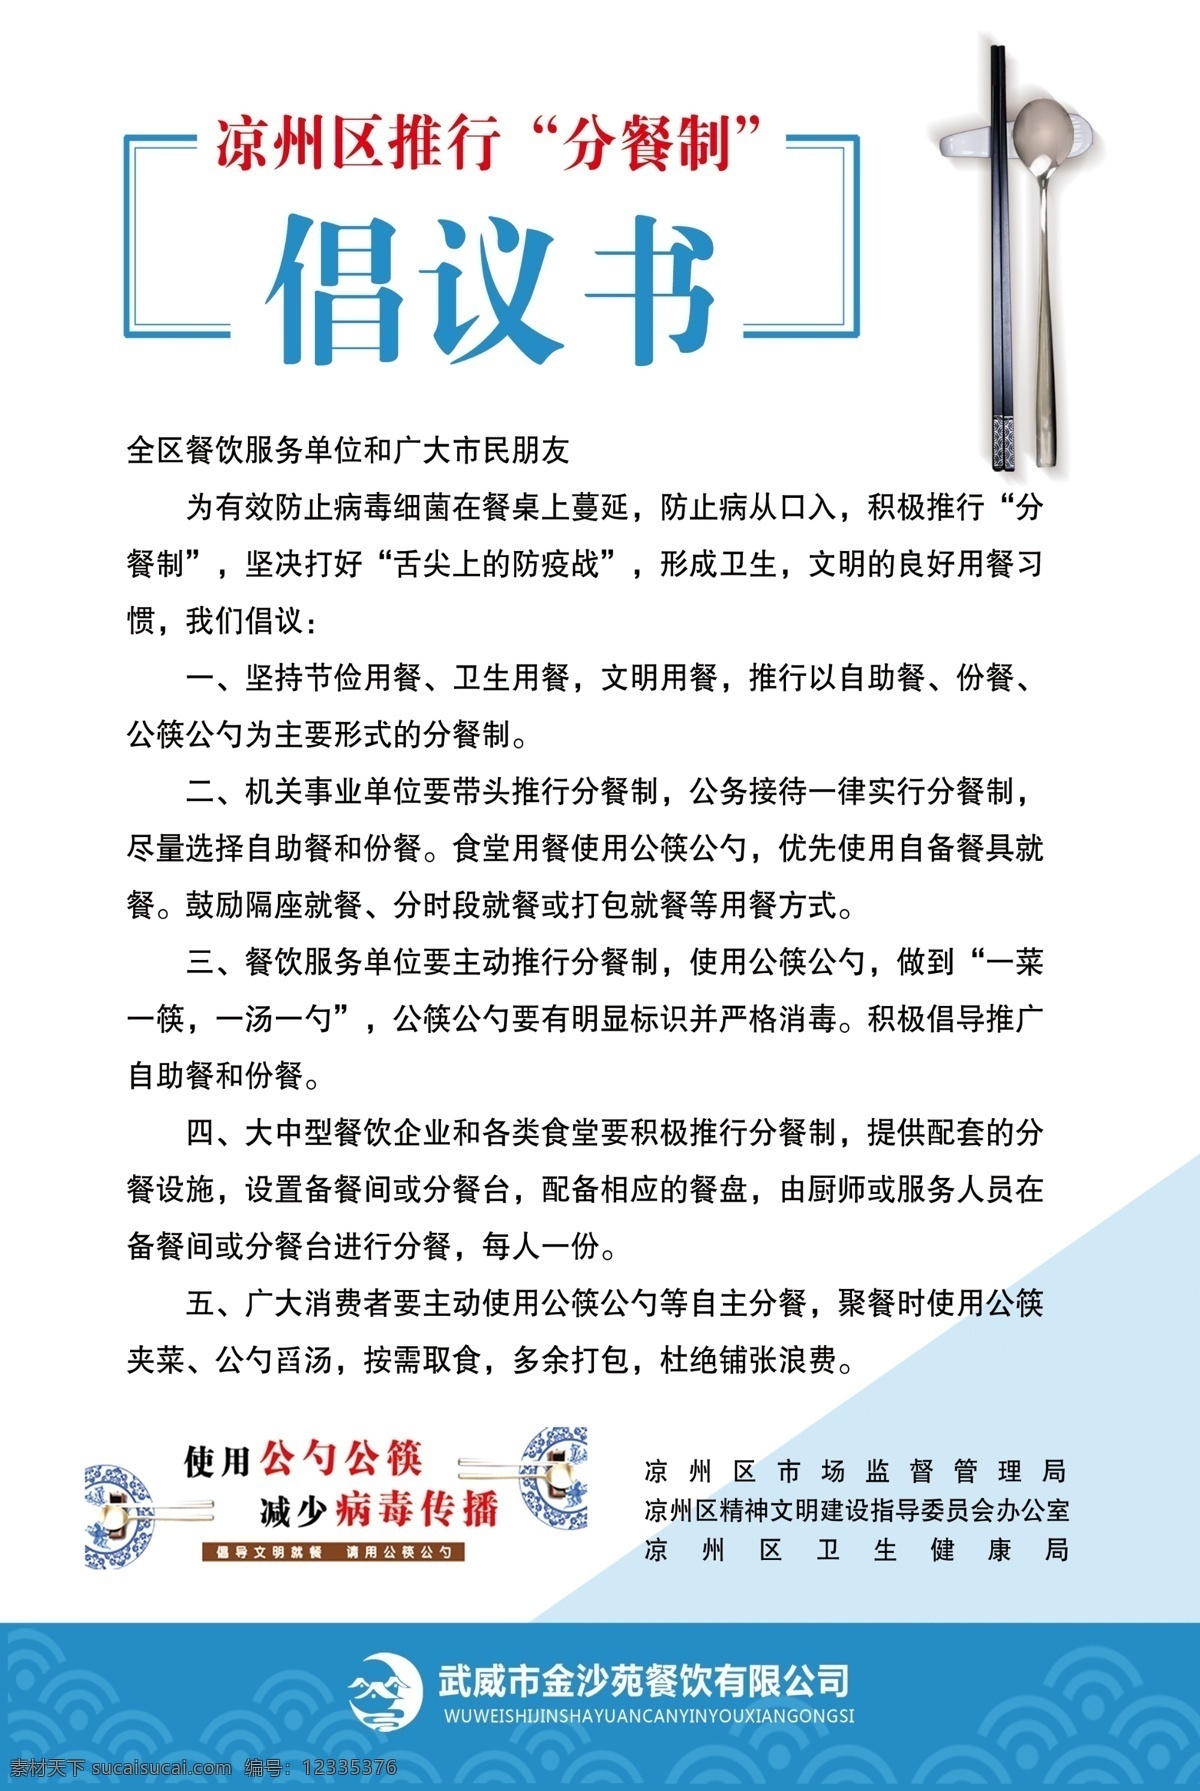 分餐倡议书 创城餐饮海报 公勺公筷 倡议书 海报 文化艺术